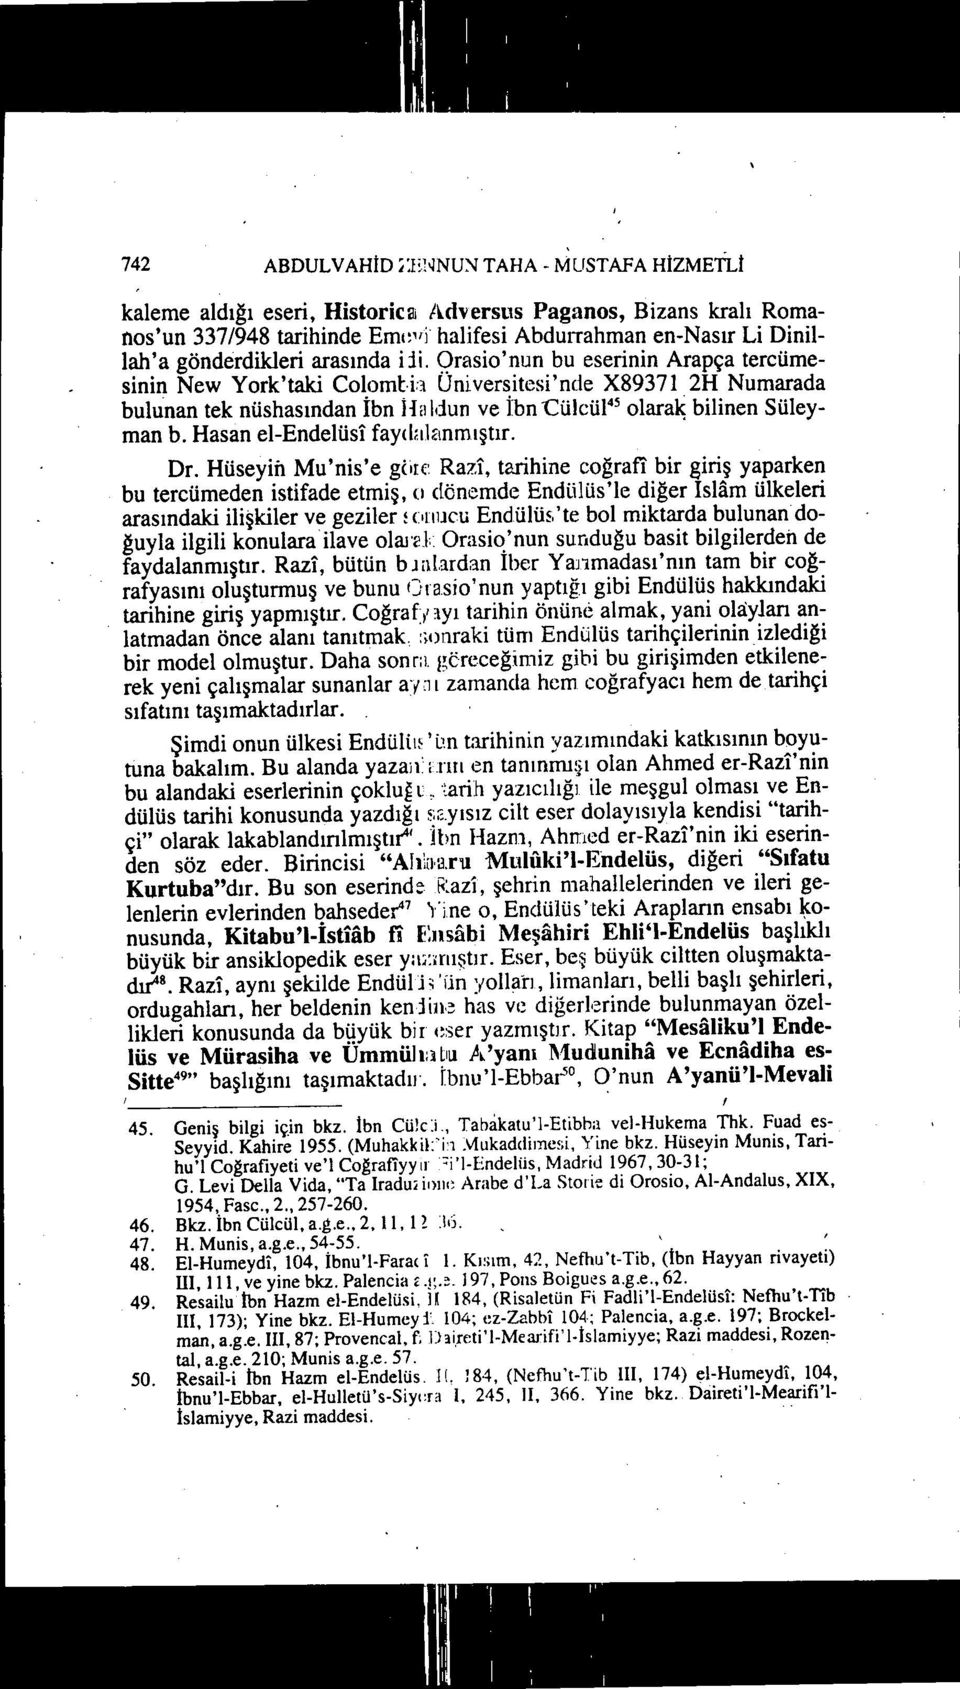 iii. Qrasio'nun bu eserinin Arapça tercümesinin New York'taki Colomt-h Universitesi'nde X89371 2H Numarada bulunan tek nüshasından İbn Ha Idun ve İbn -Cülcül 4S olaralç bilinen Süleyman b.